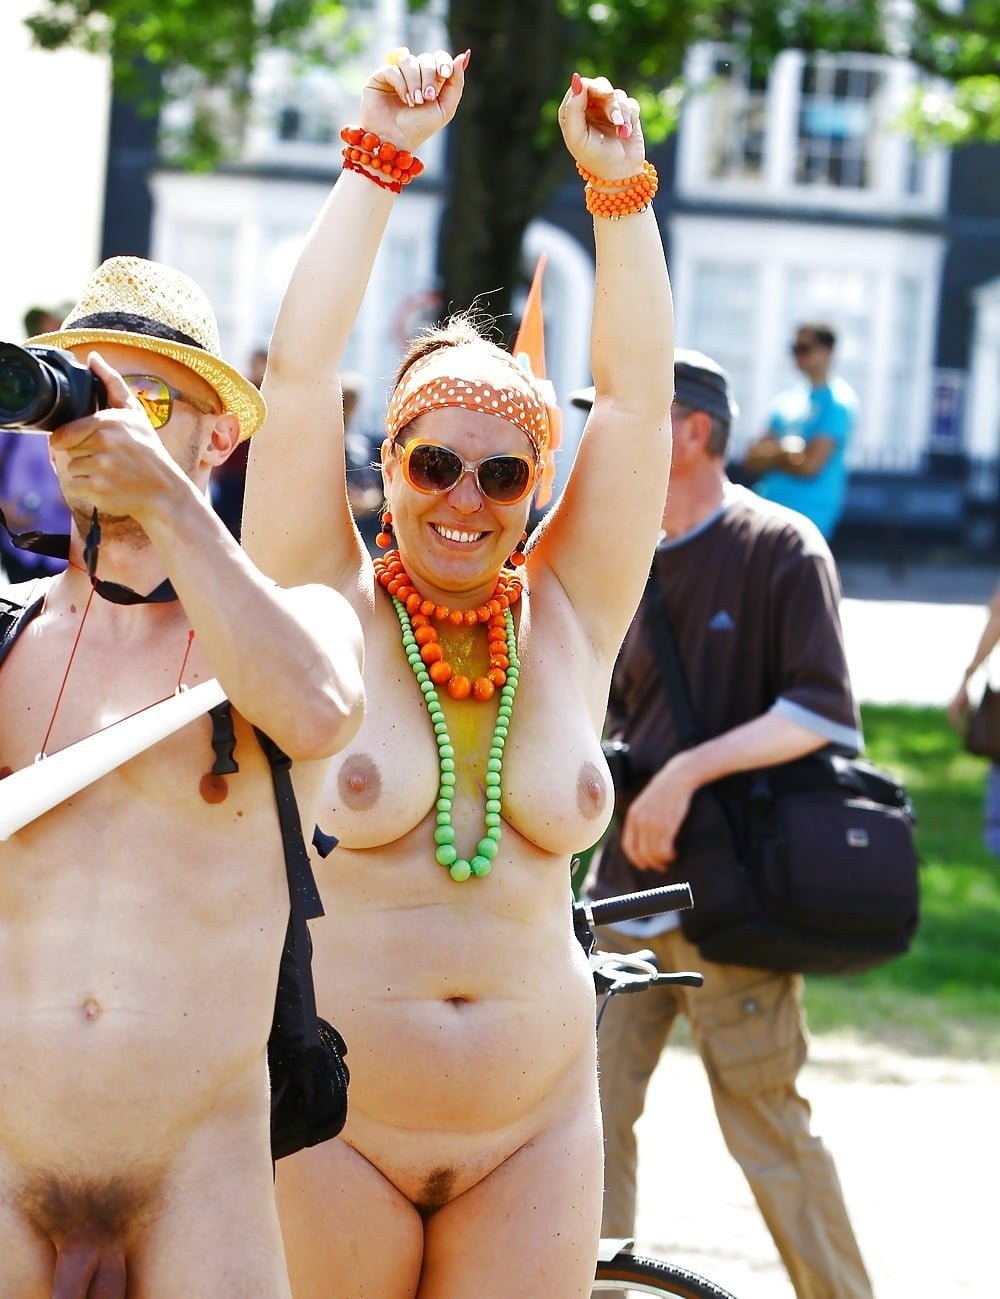 Naked Girls On Festivals